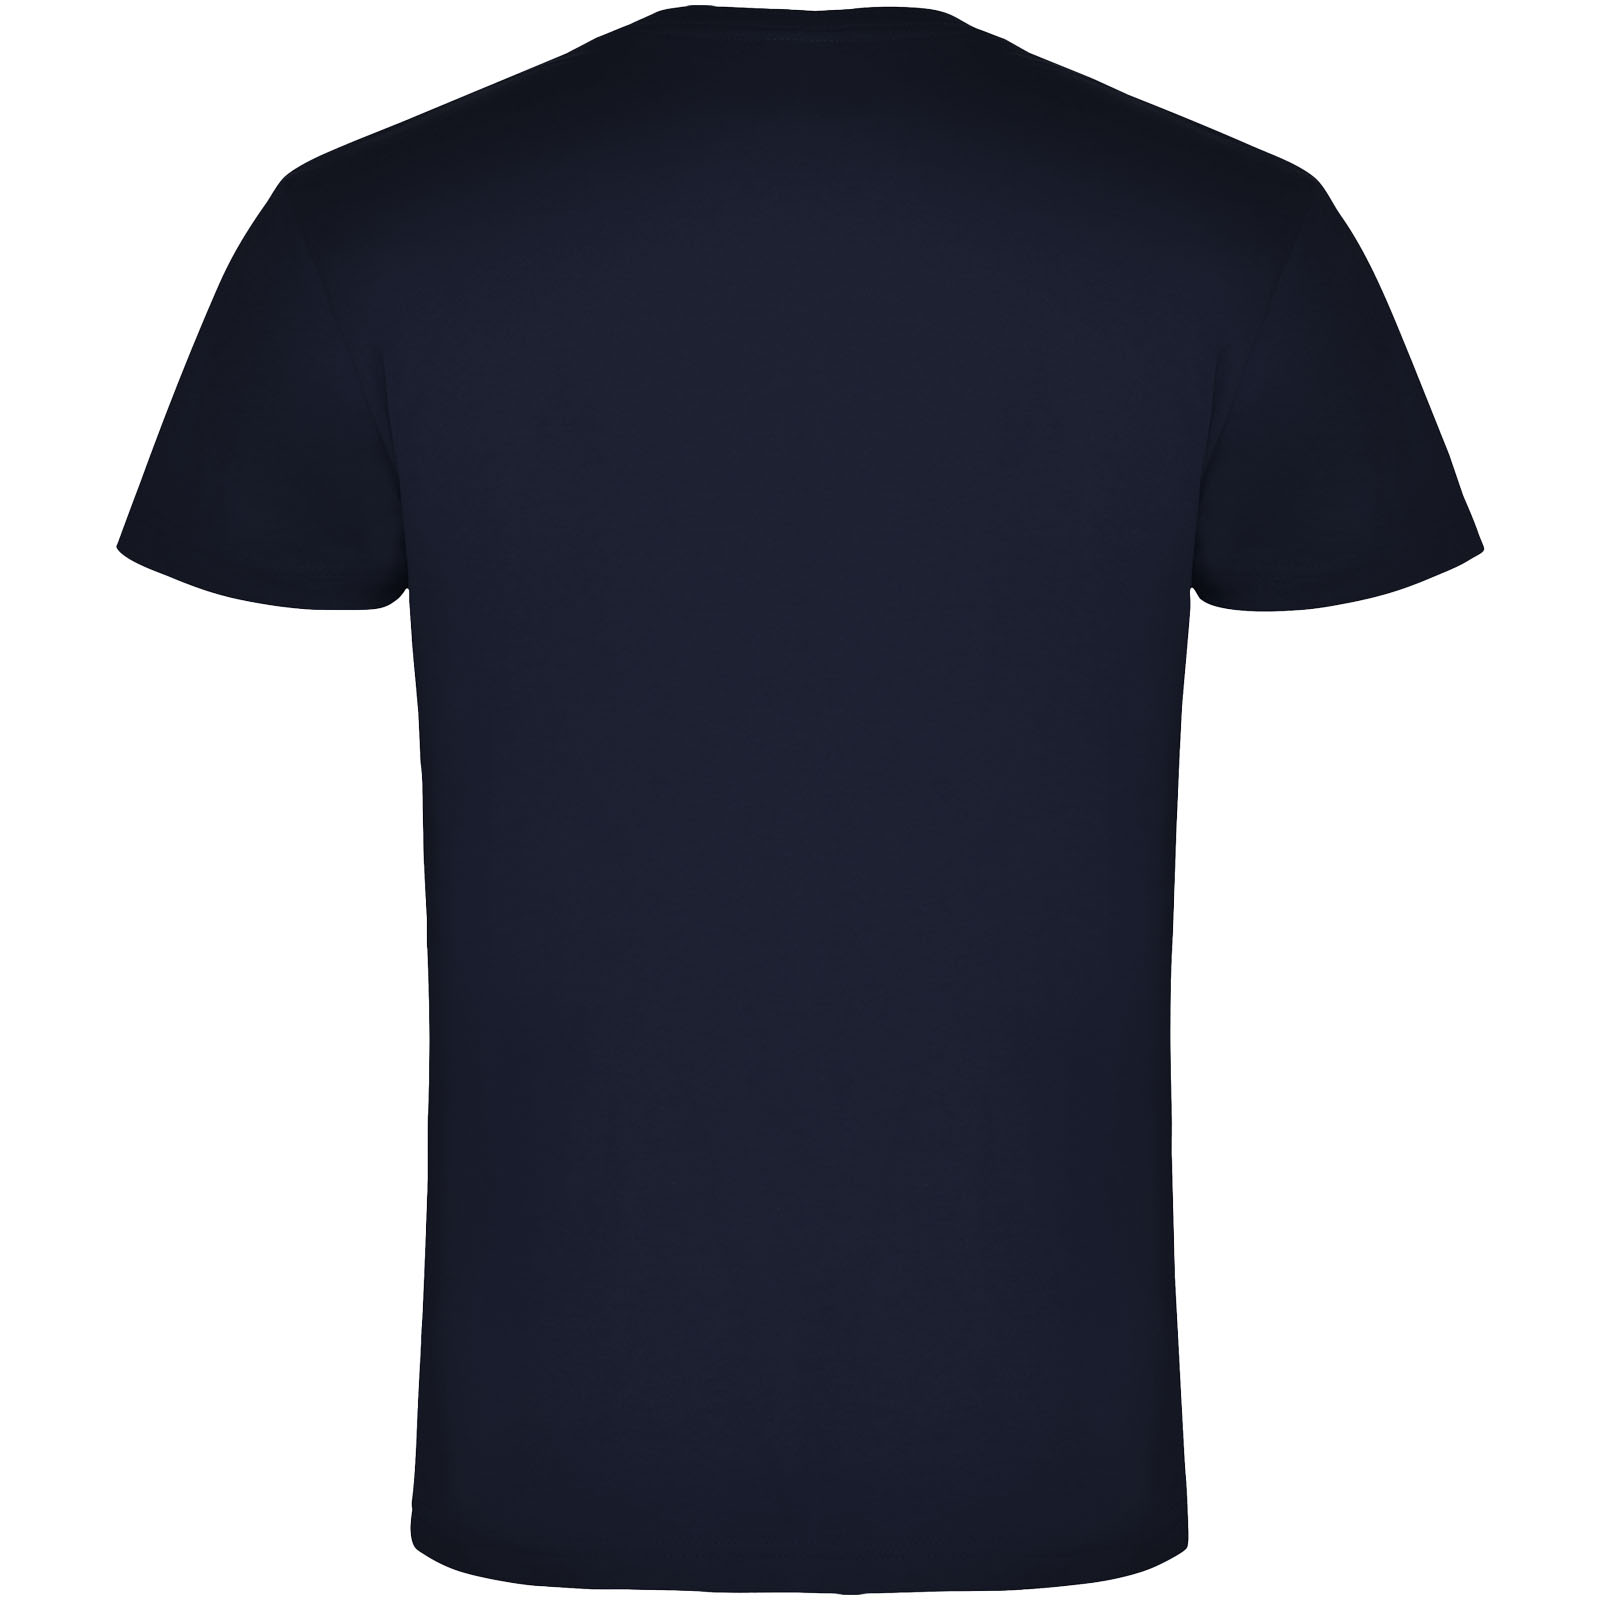 Advertising T-shirts - Samoyedo short sleeve men's v-neck t-shirt - 1